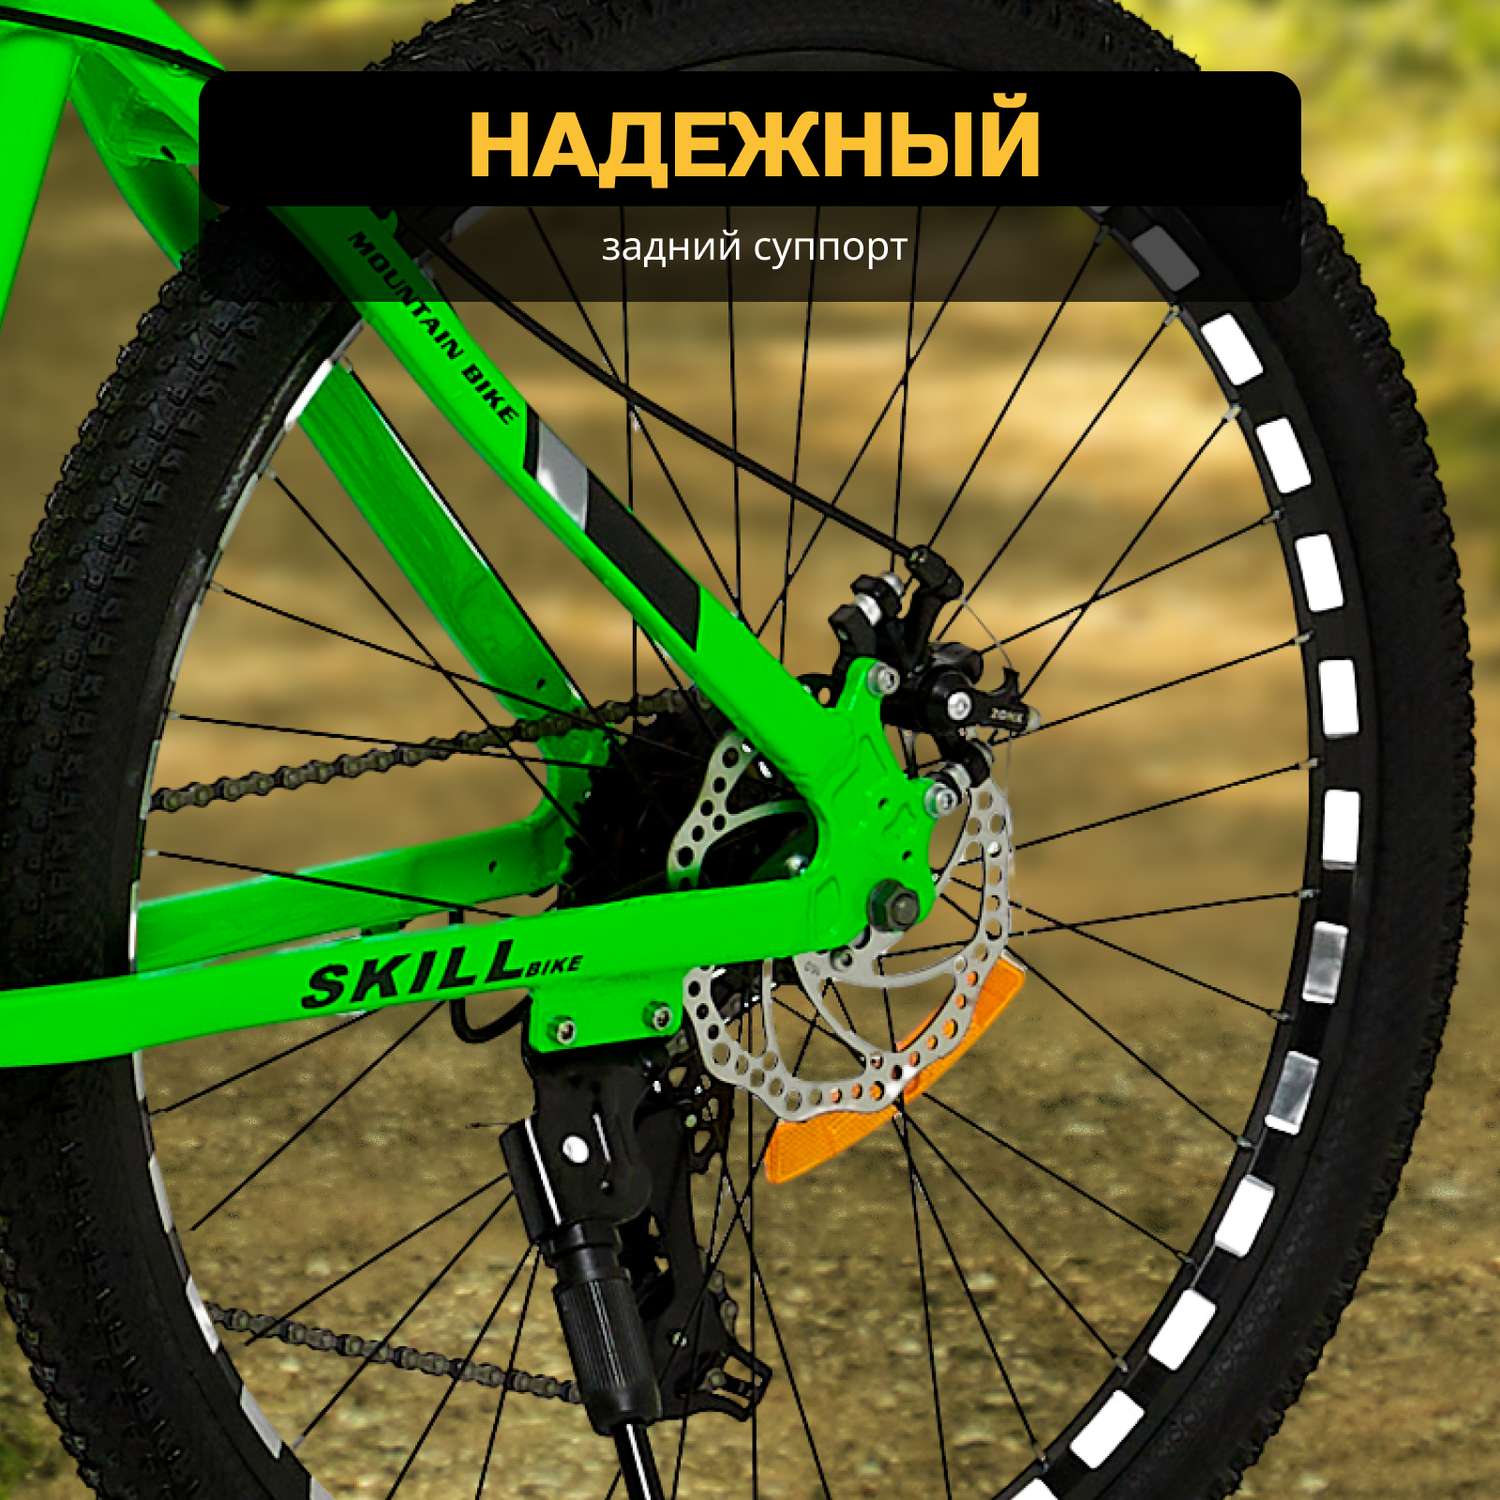 Велосипед Skill Bike Green 3051 - фото 12